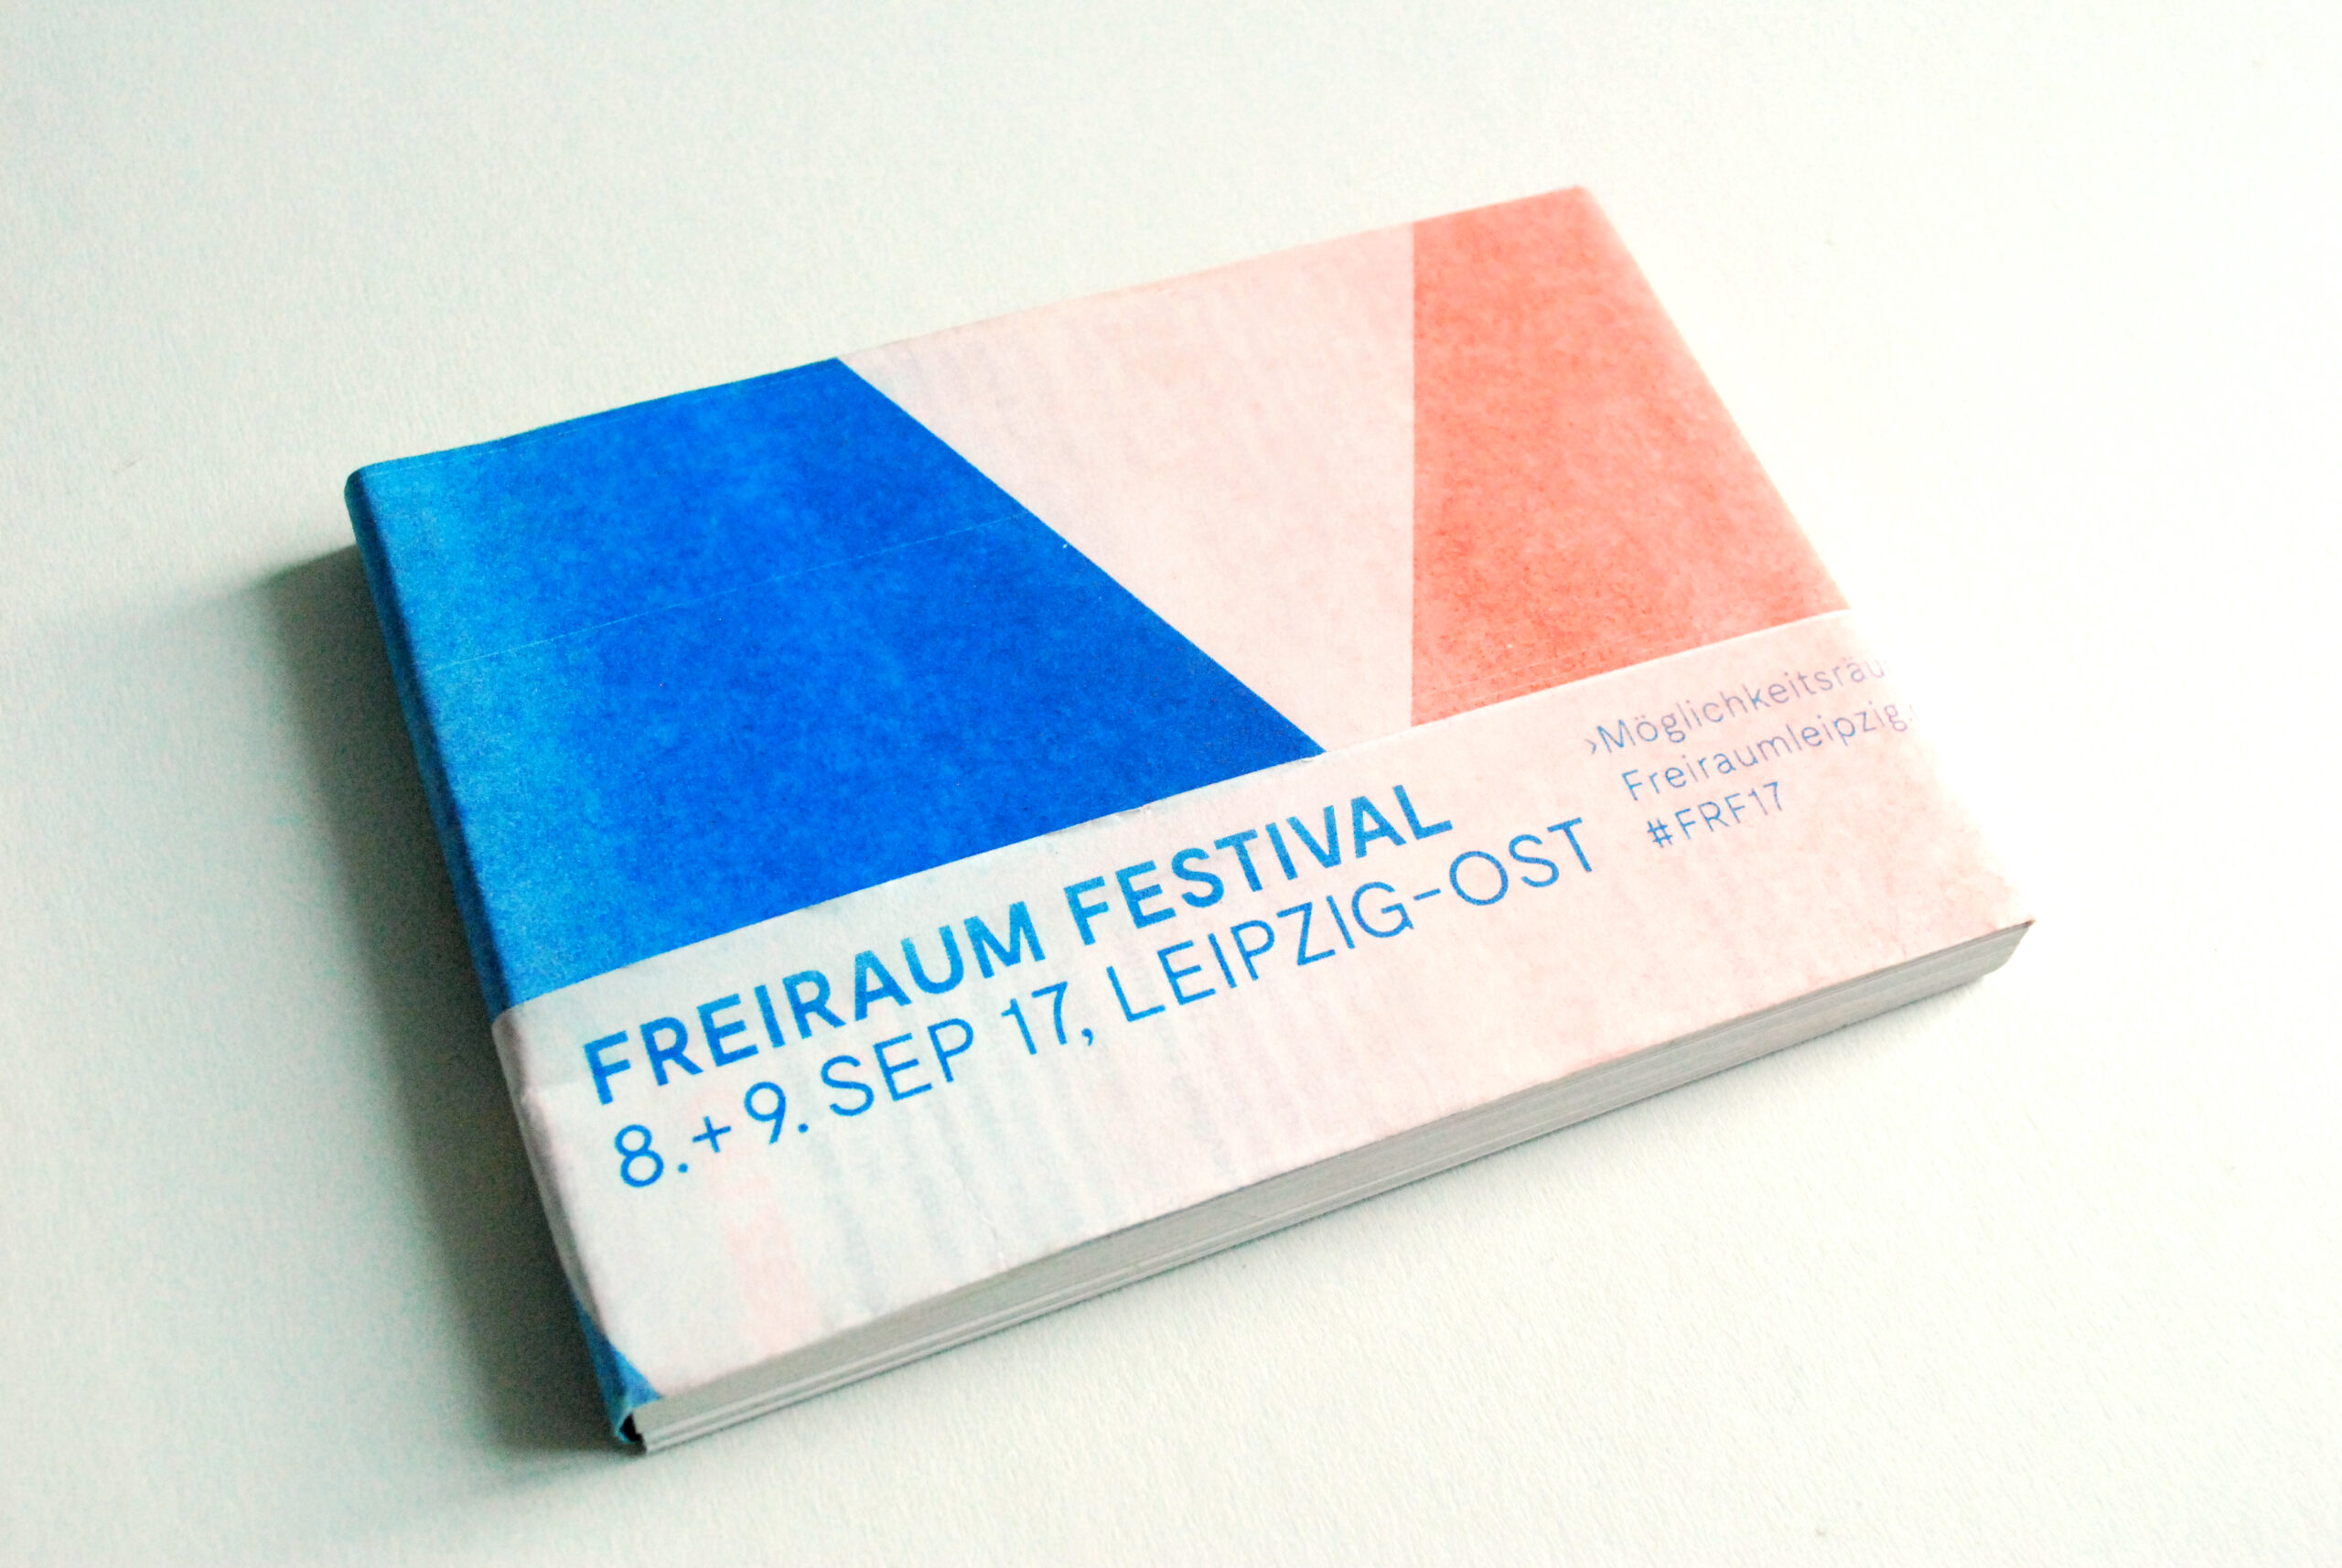 Freiraum Festival